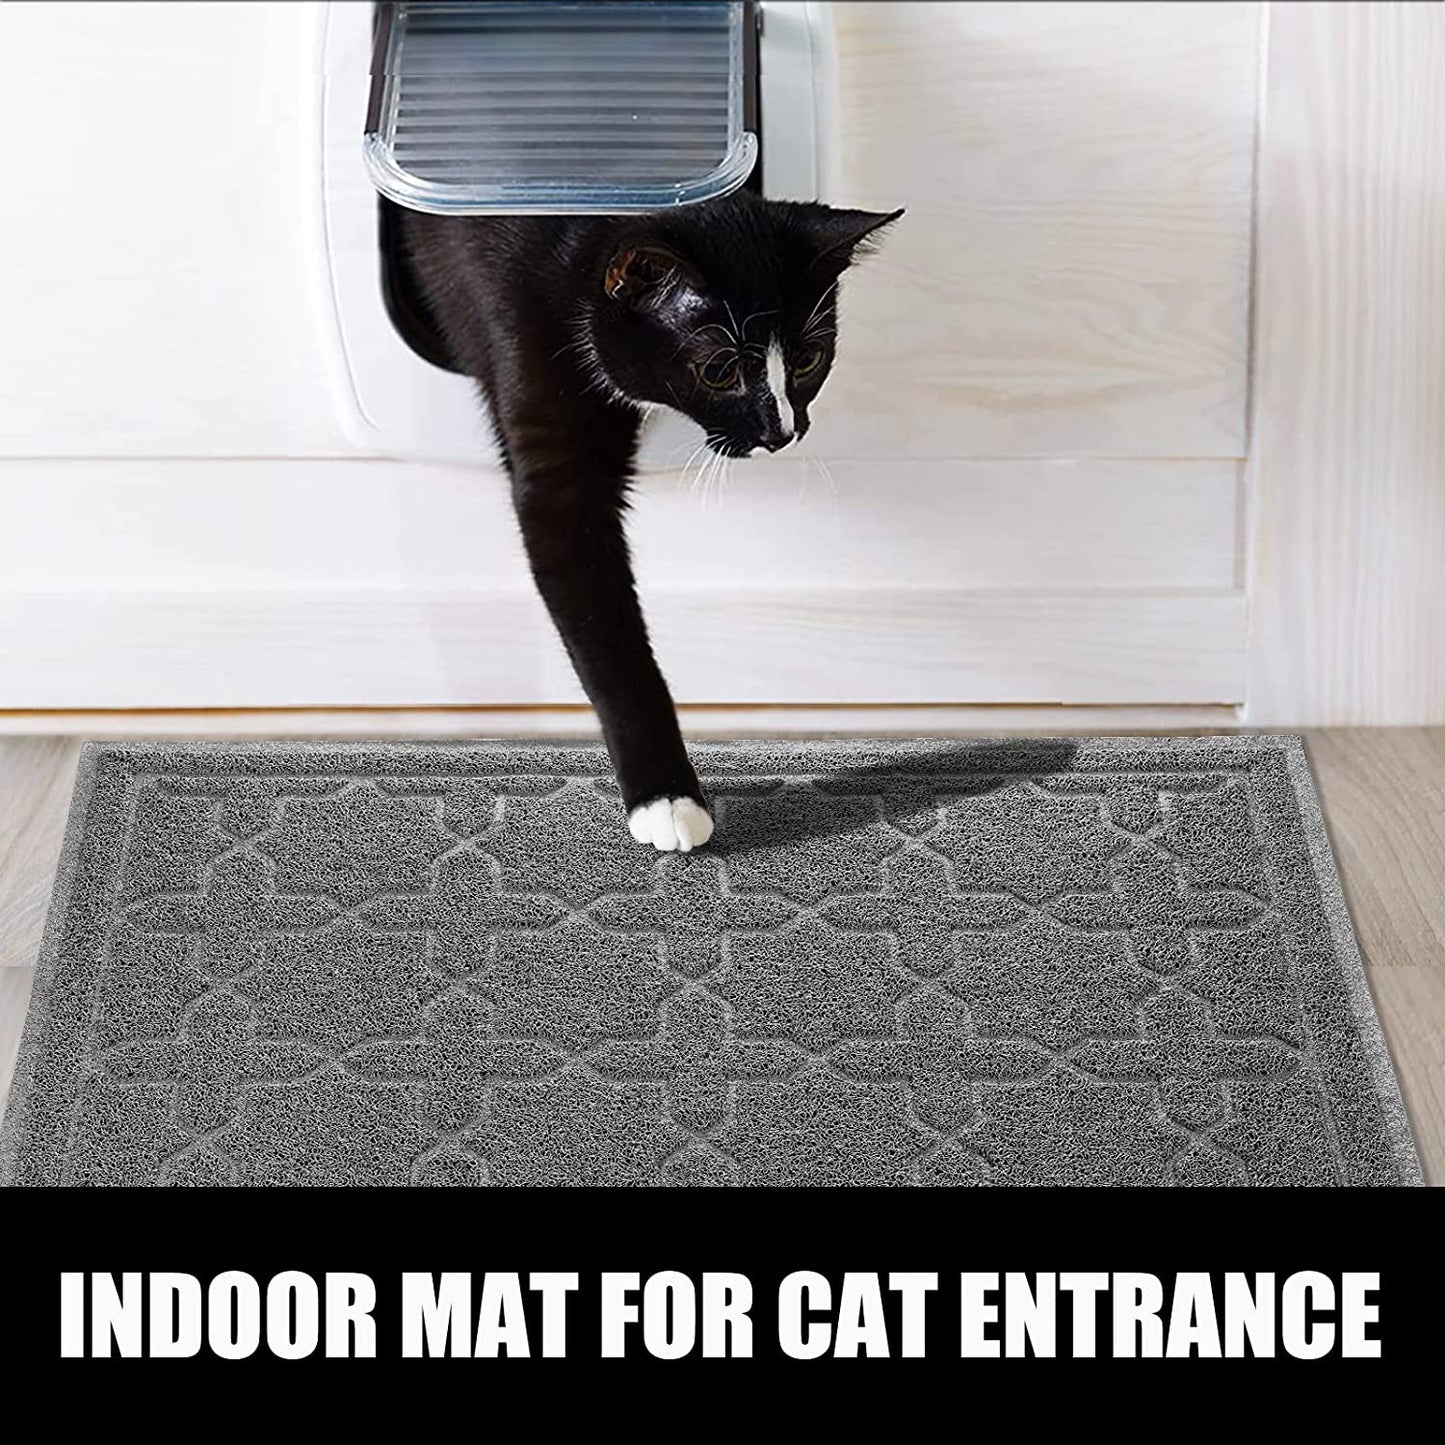 Cat Litter Mat, 35.4"X23.6" Litter Box Mat with Litter Lock Mesh, Soft Durable Cat Litter Mat Litter Trapping Mat, Easy to Clean, Non-Slip, Water Resistant, Litter Free Floors,Dark Grey